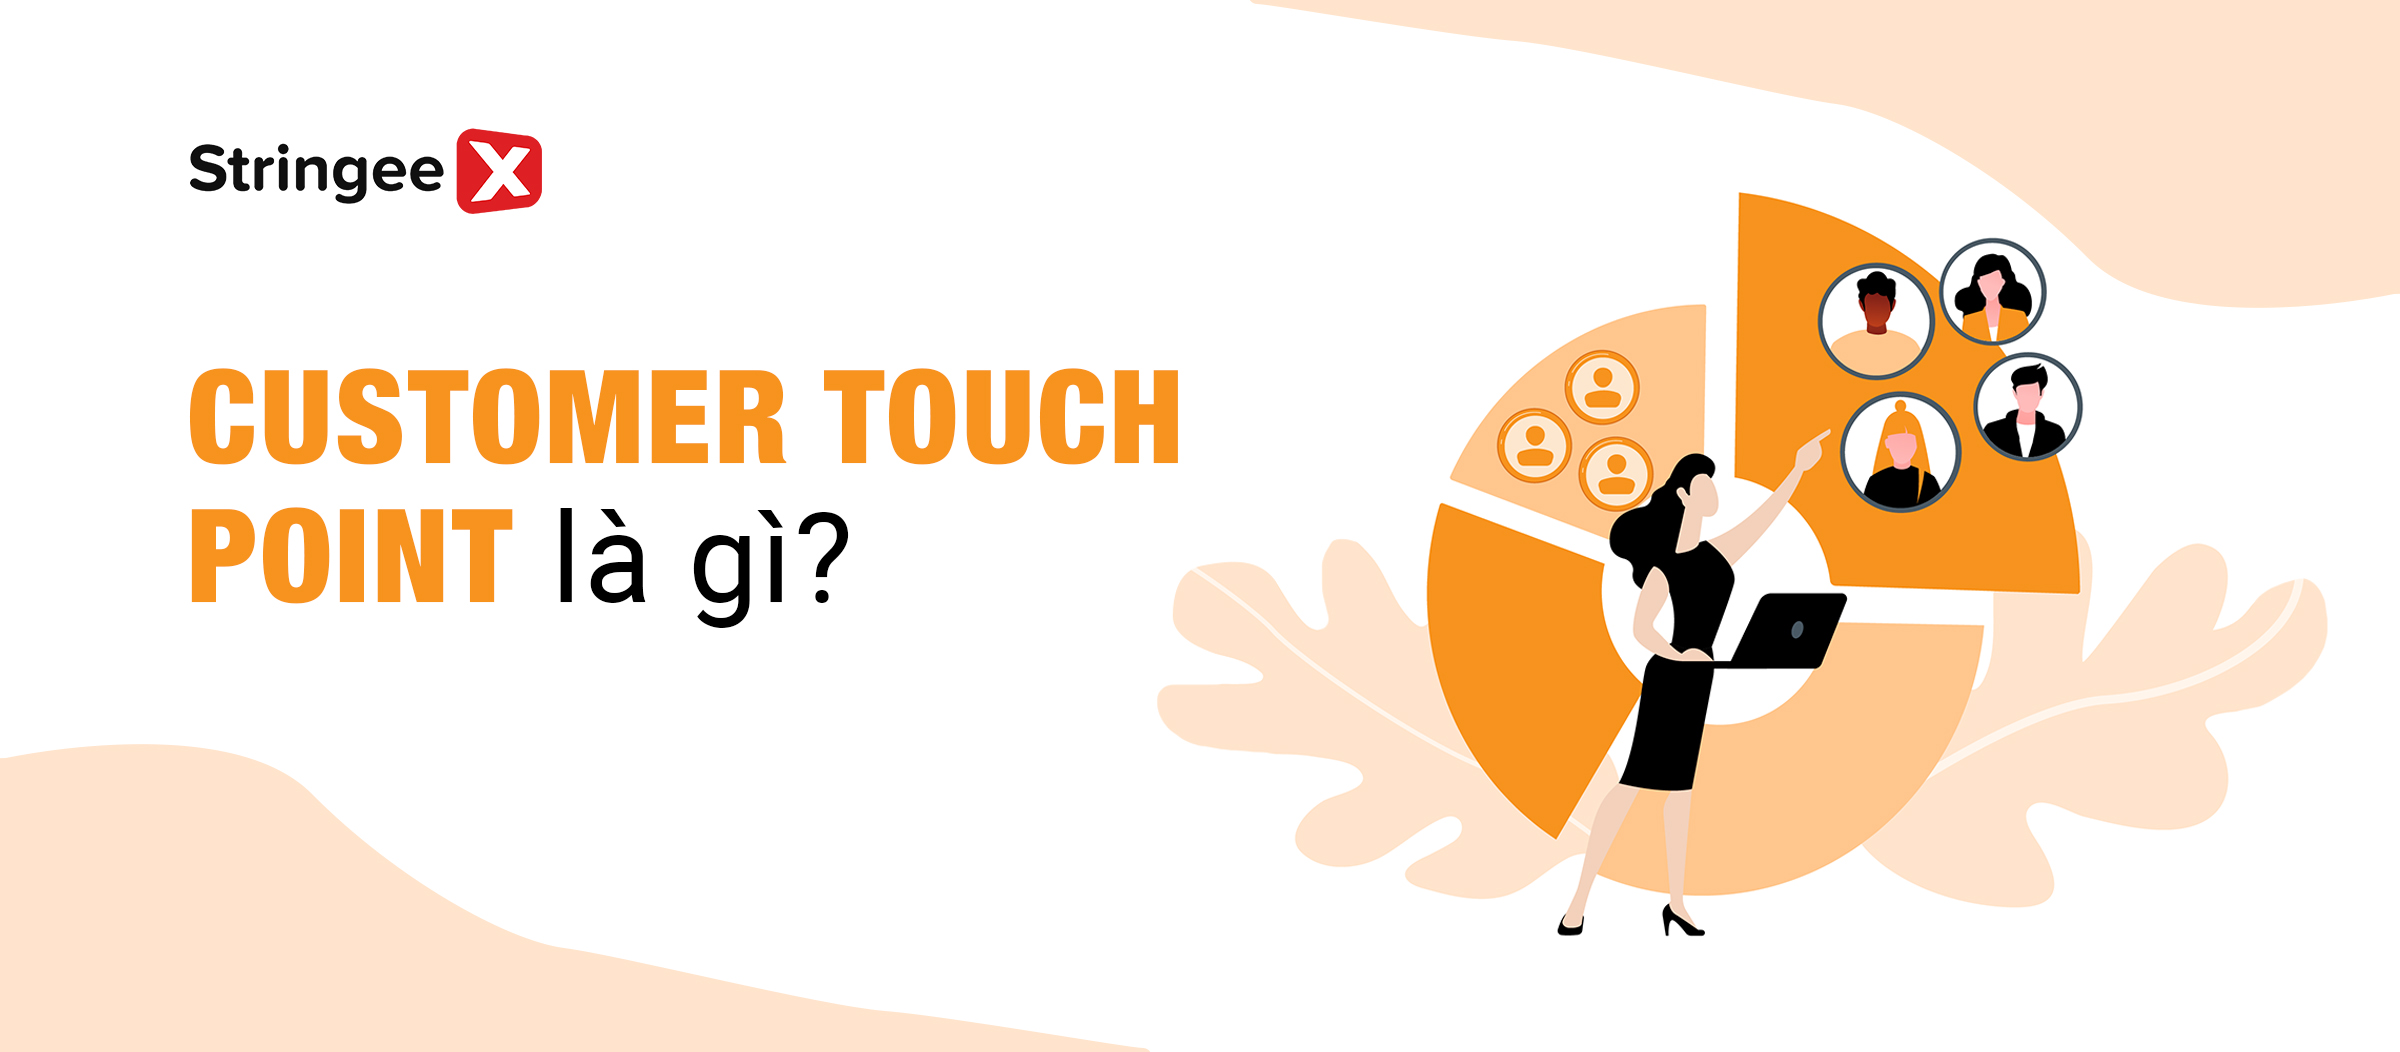 Customer Touch Point là gì? Cách xác định và tận dụng hiệu quả